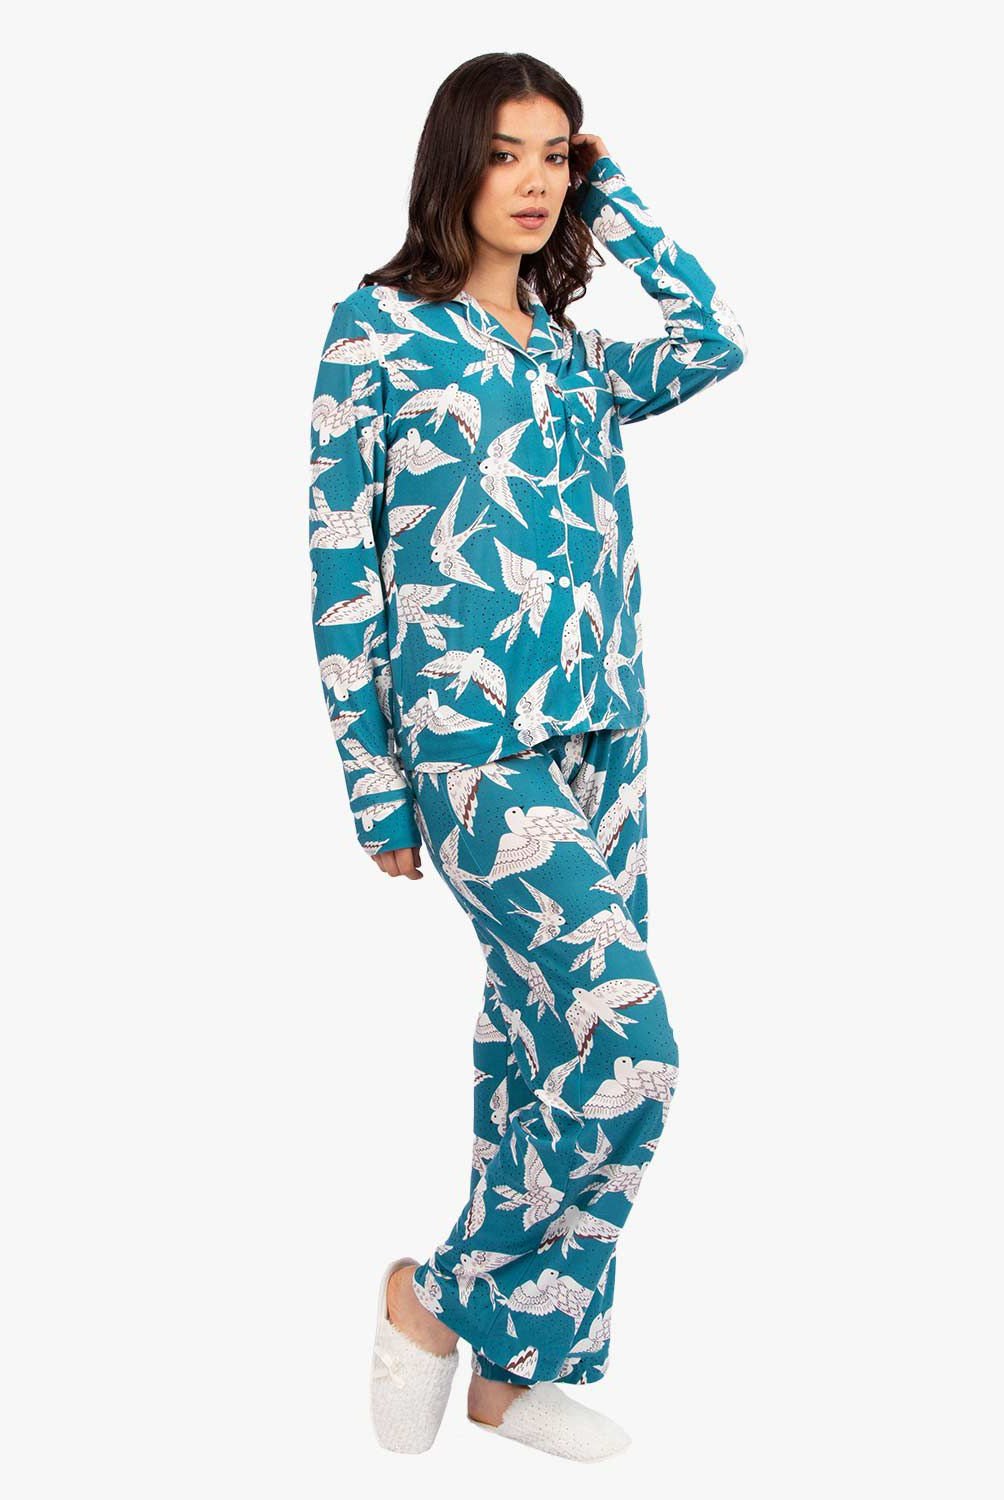 LANNA SLEEPWEAR - Pijama Mujer Lanna